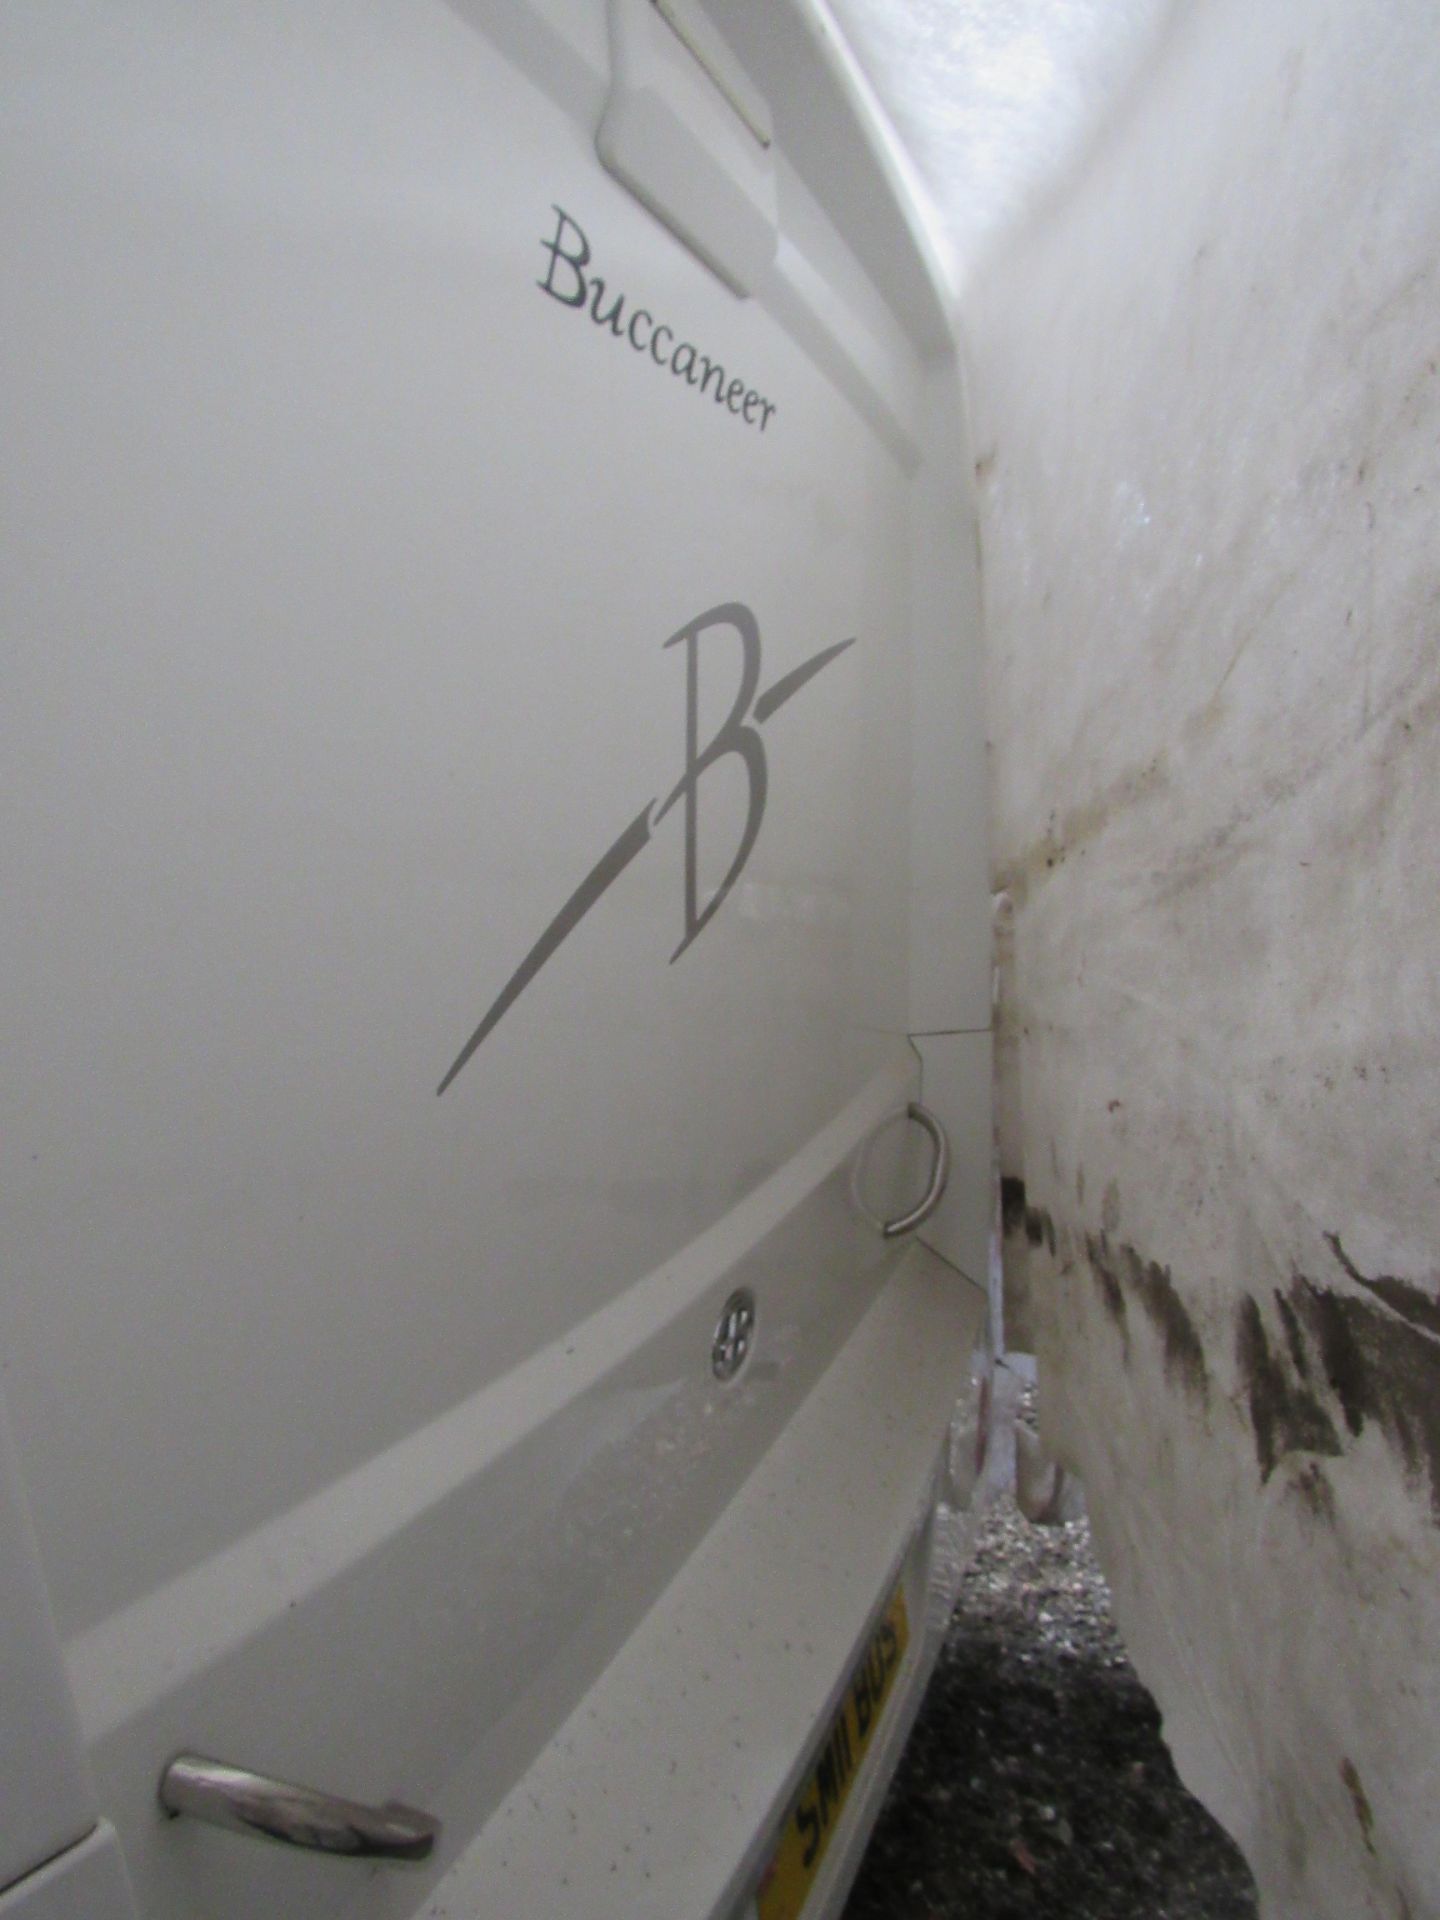 Buccaneer Clipper Caravan, 2012, Vin SGET000 EXBBUC5116, owner info pack present. (Located - Image 21 of 31